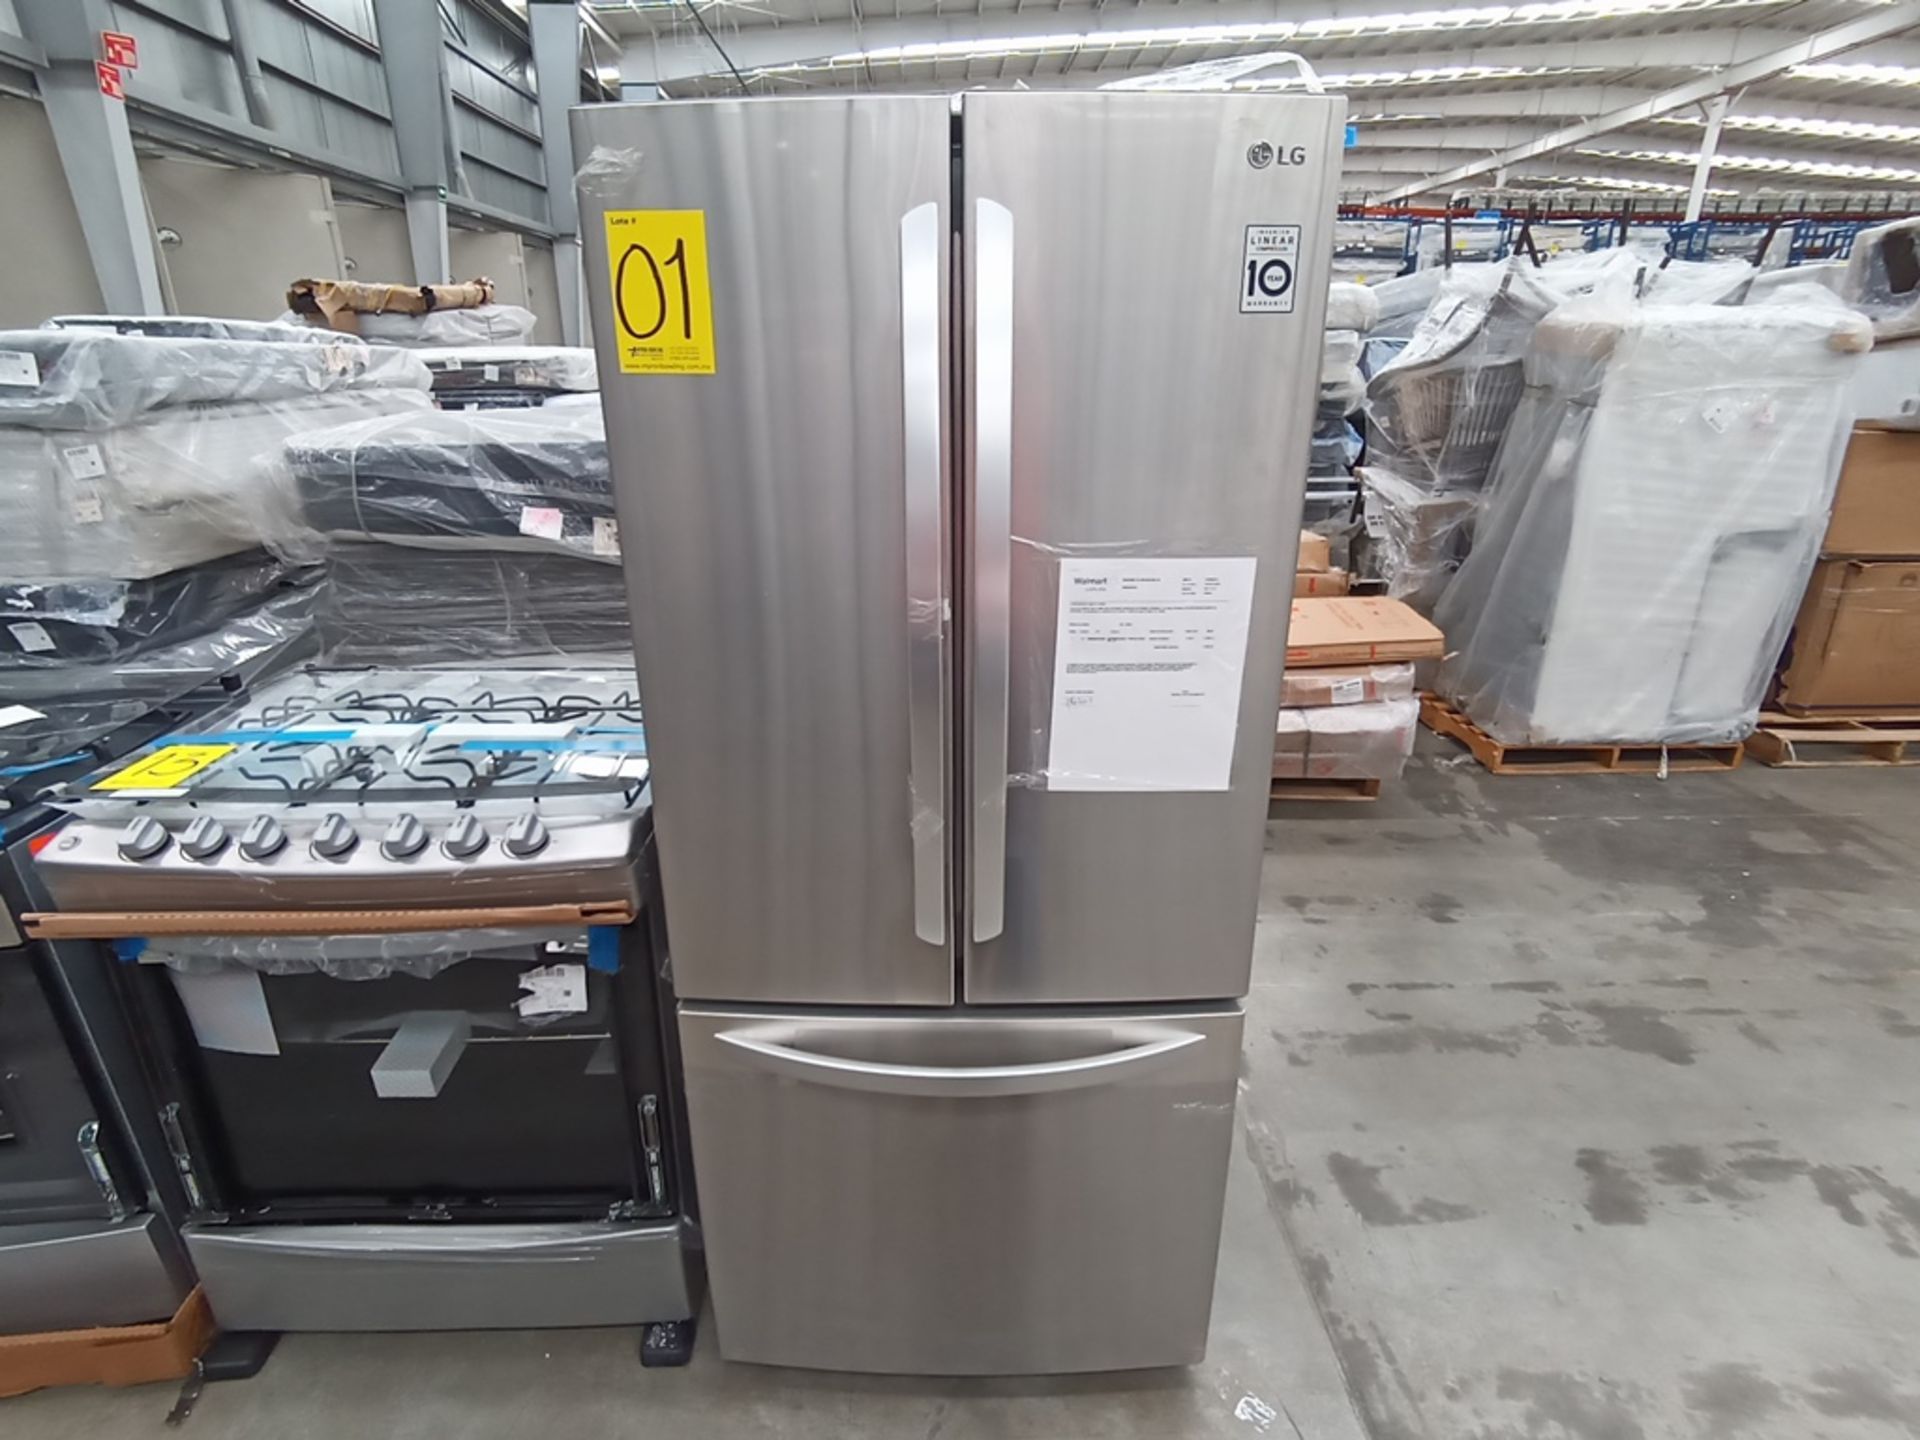 1 Refrigerador con dispensador de agua, Marca LG, Modelo GF22BGSK, Serie 112MRYA05834, Color Gris. - Image 6 of 10